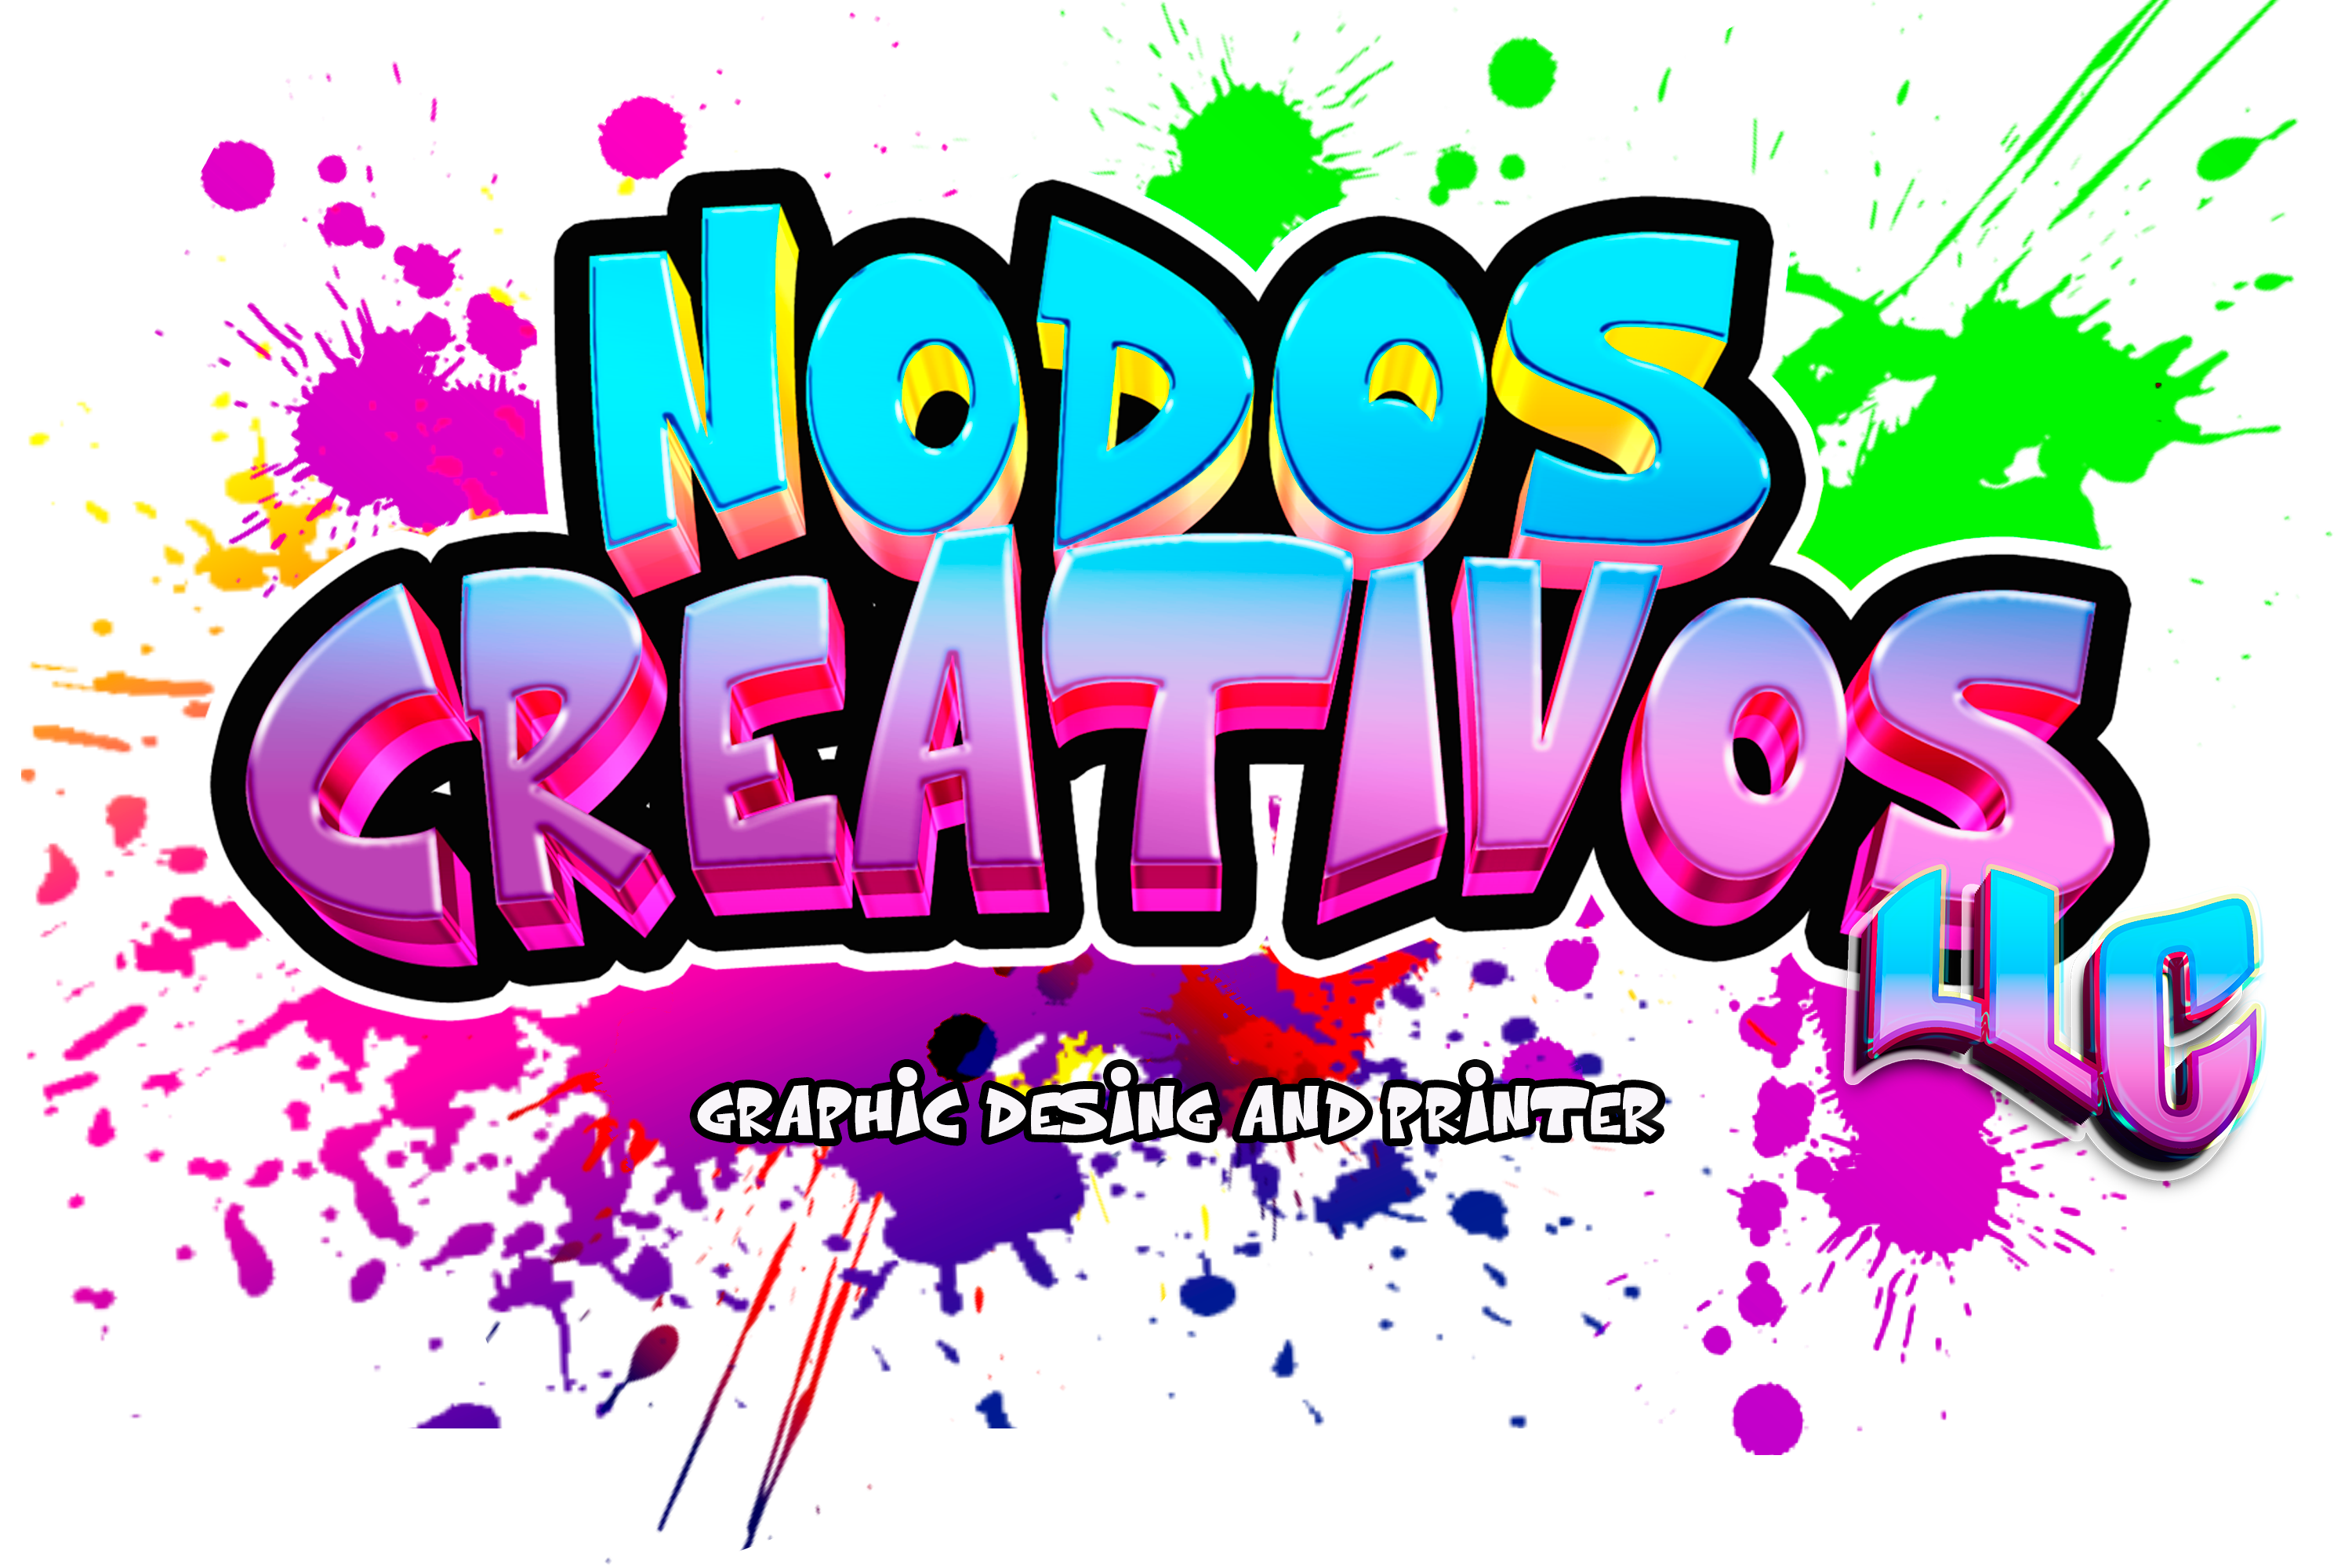 Nodos Creativos